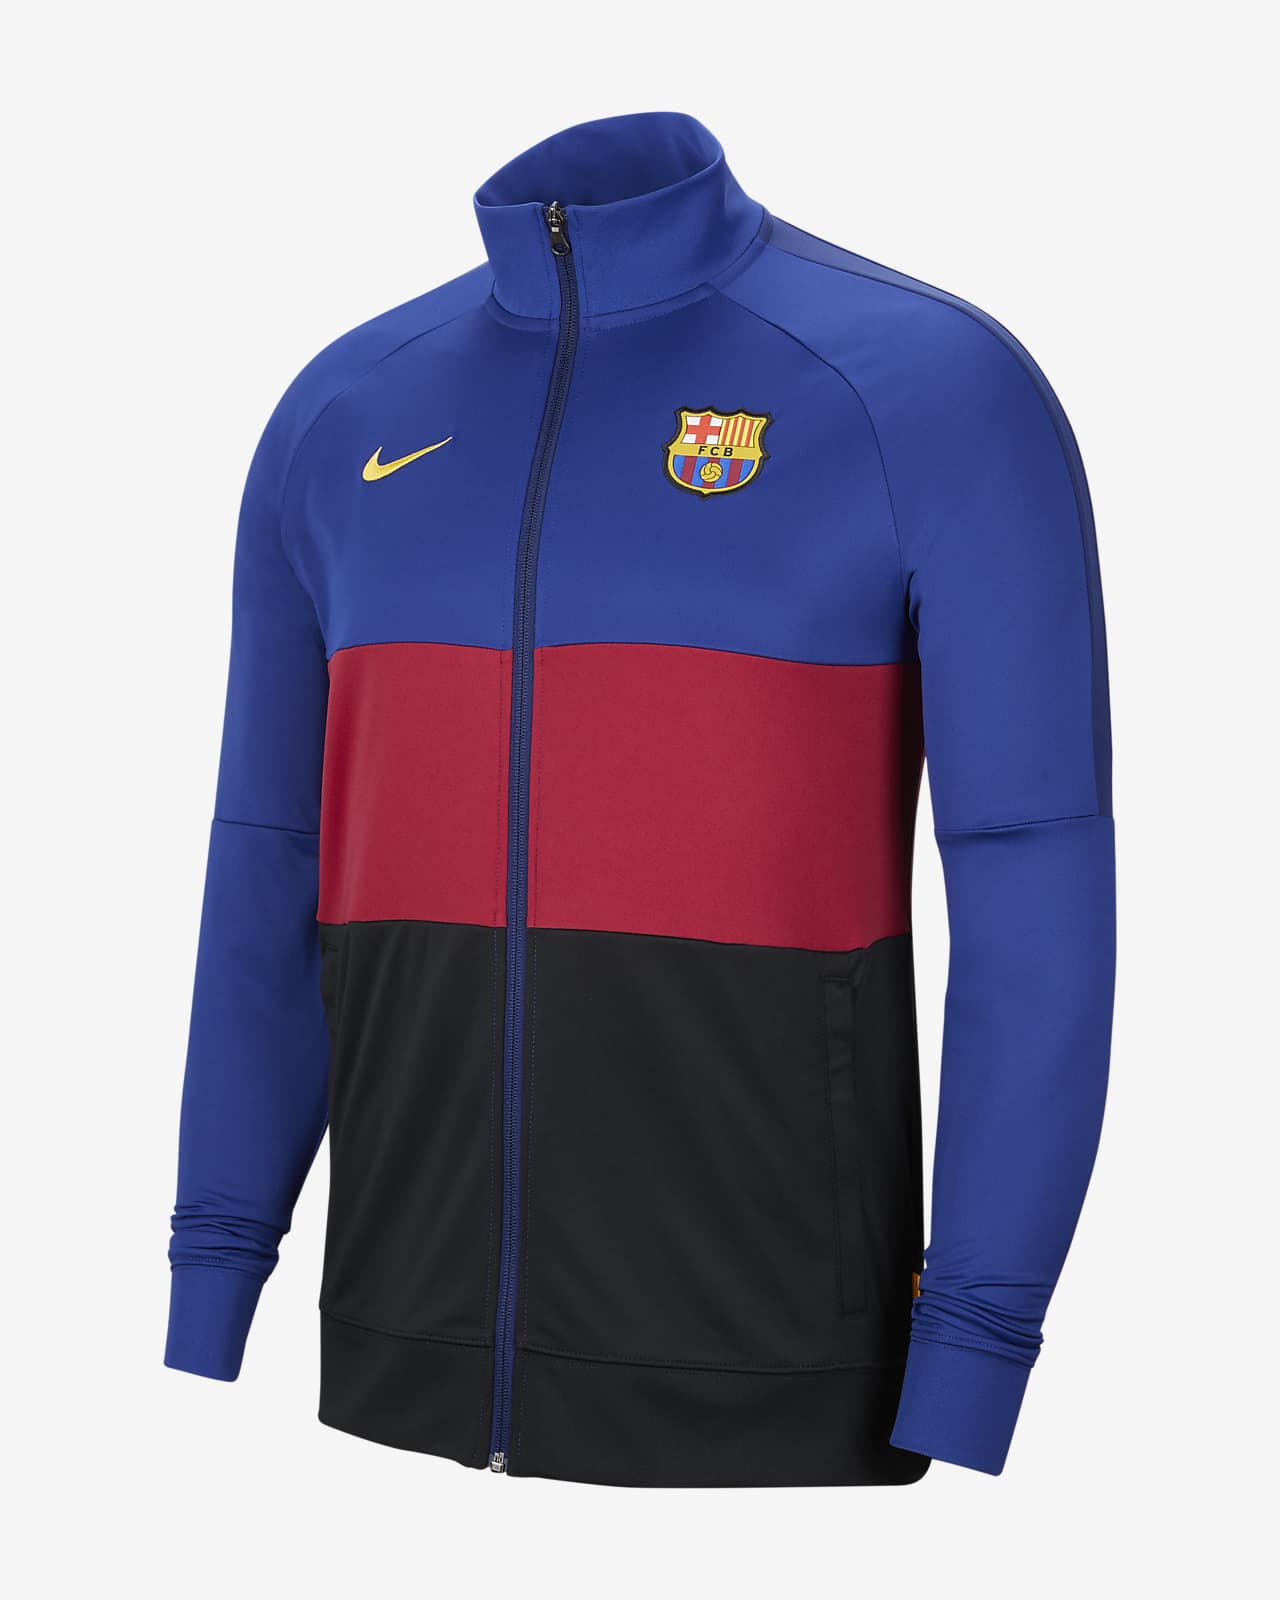 Football Tracksuit Jacket. Nike GB